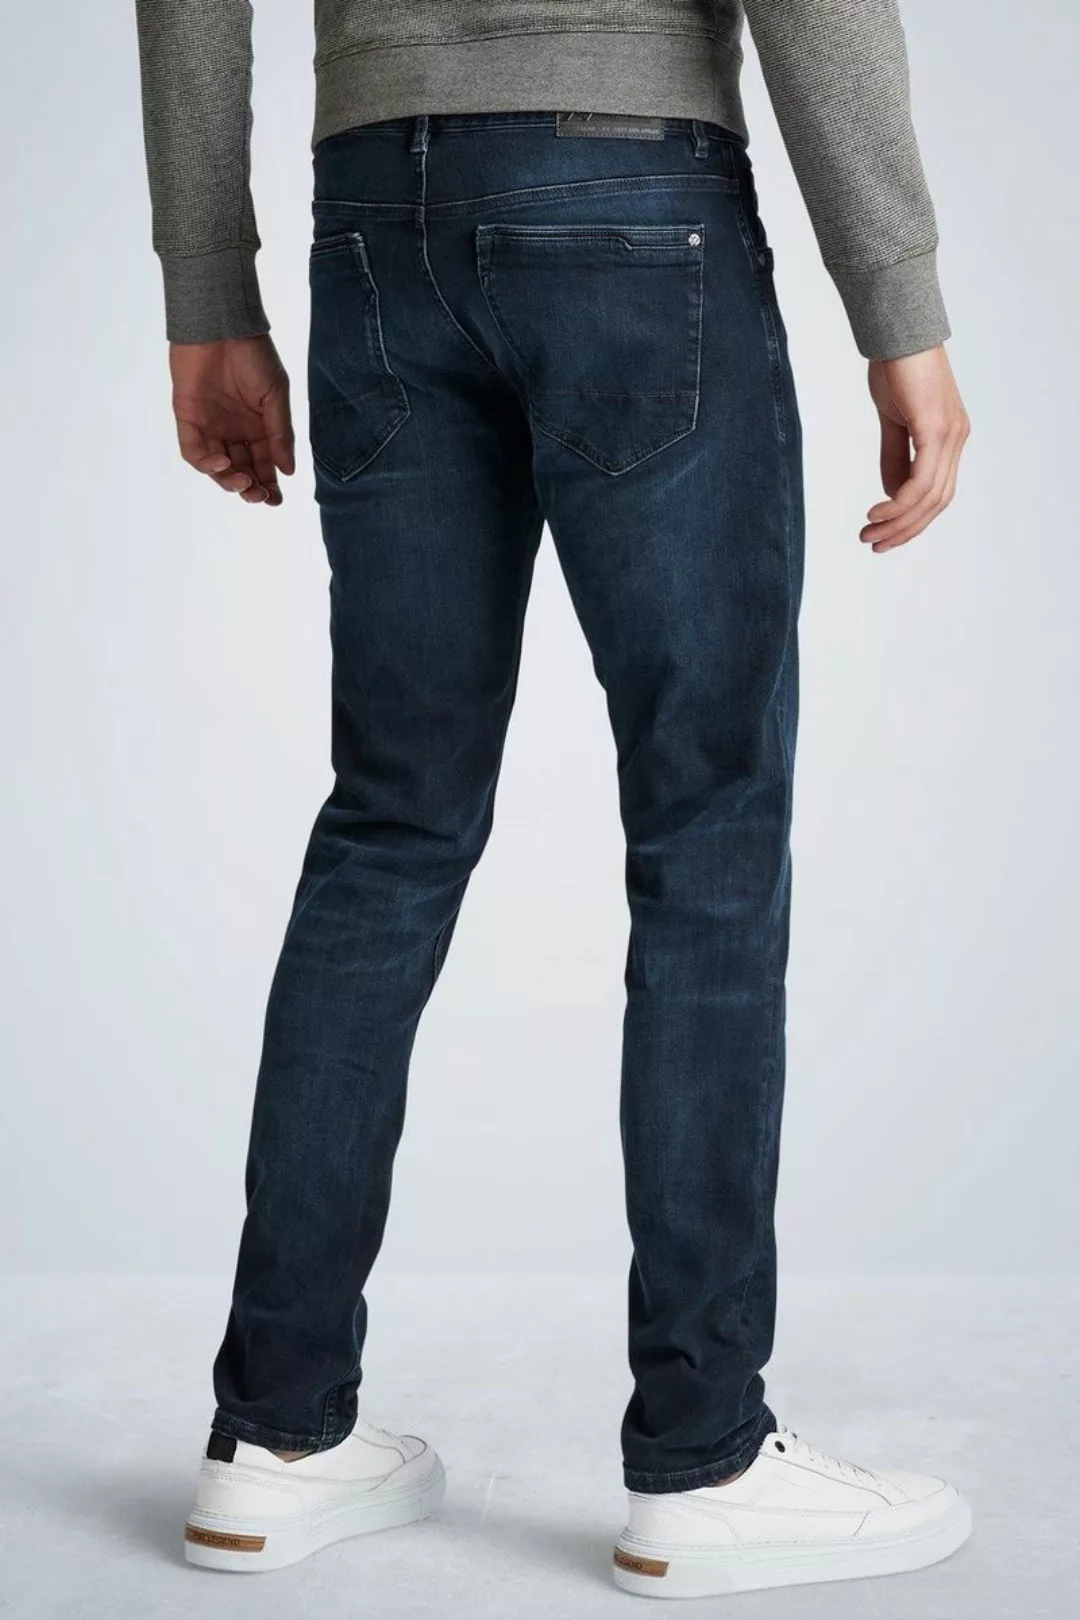 PME Legend XV Jeans Blue Black PTR150 - Größe W 31 - L 32 günstig online kaufen